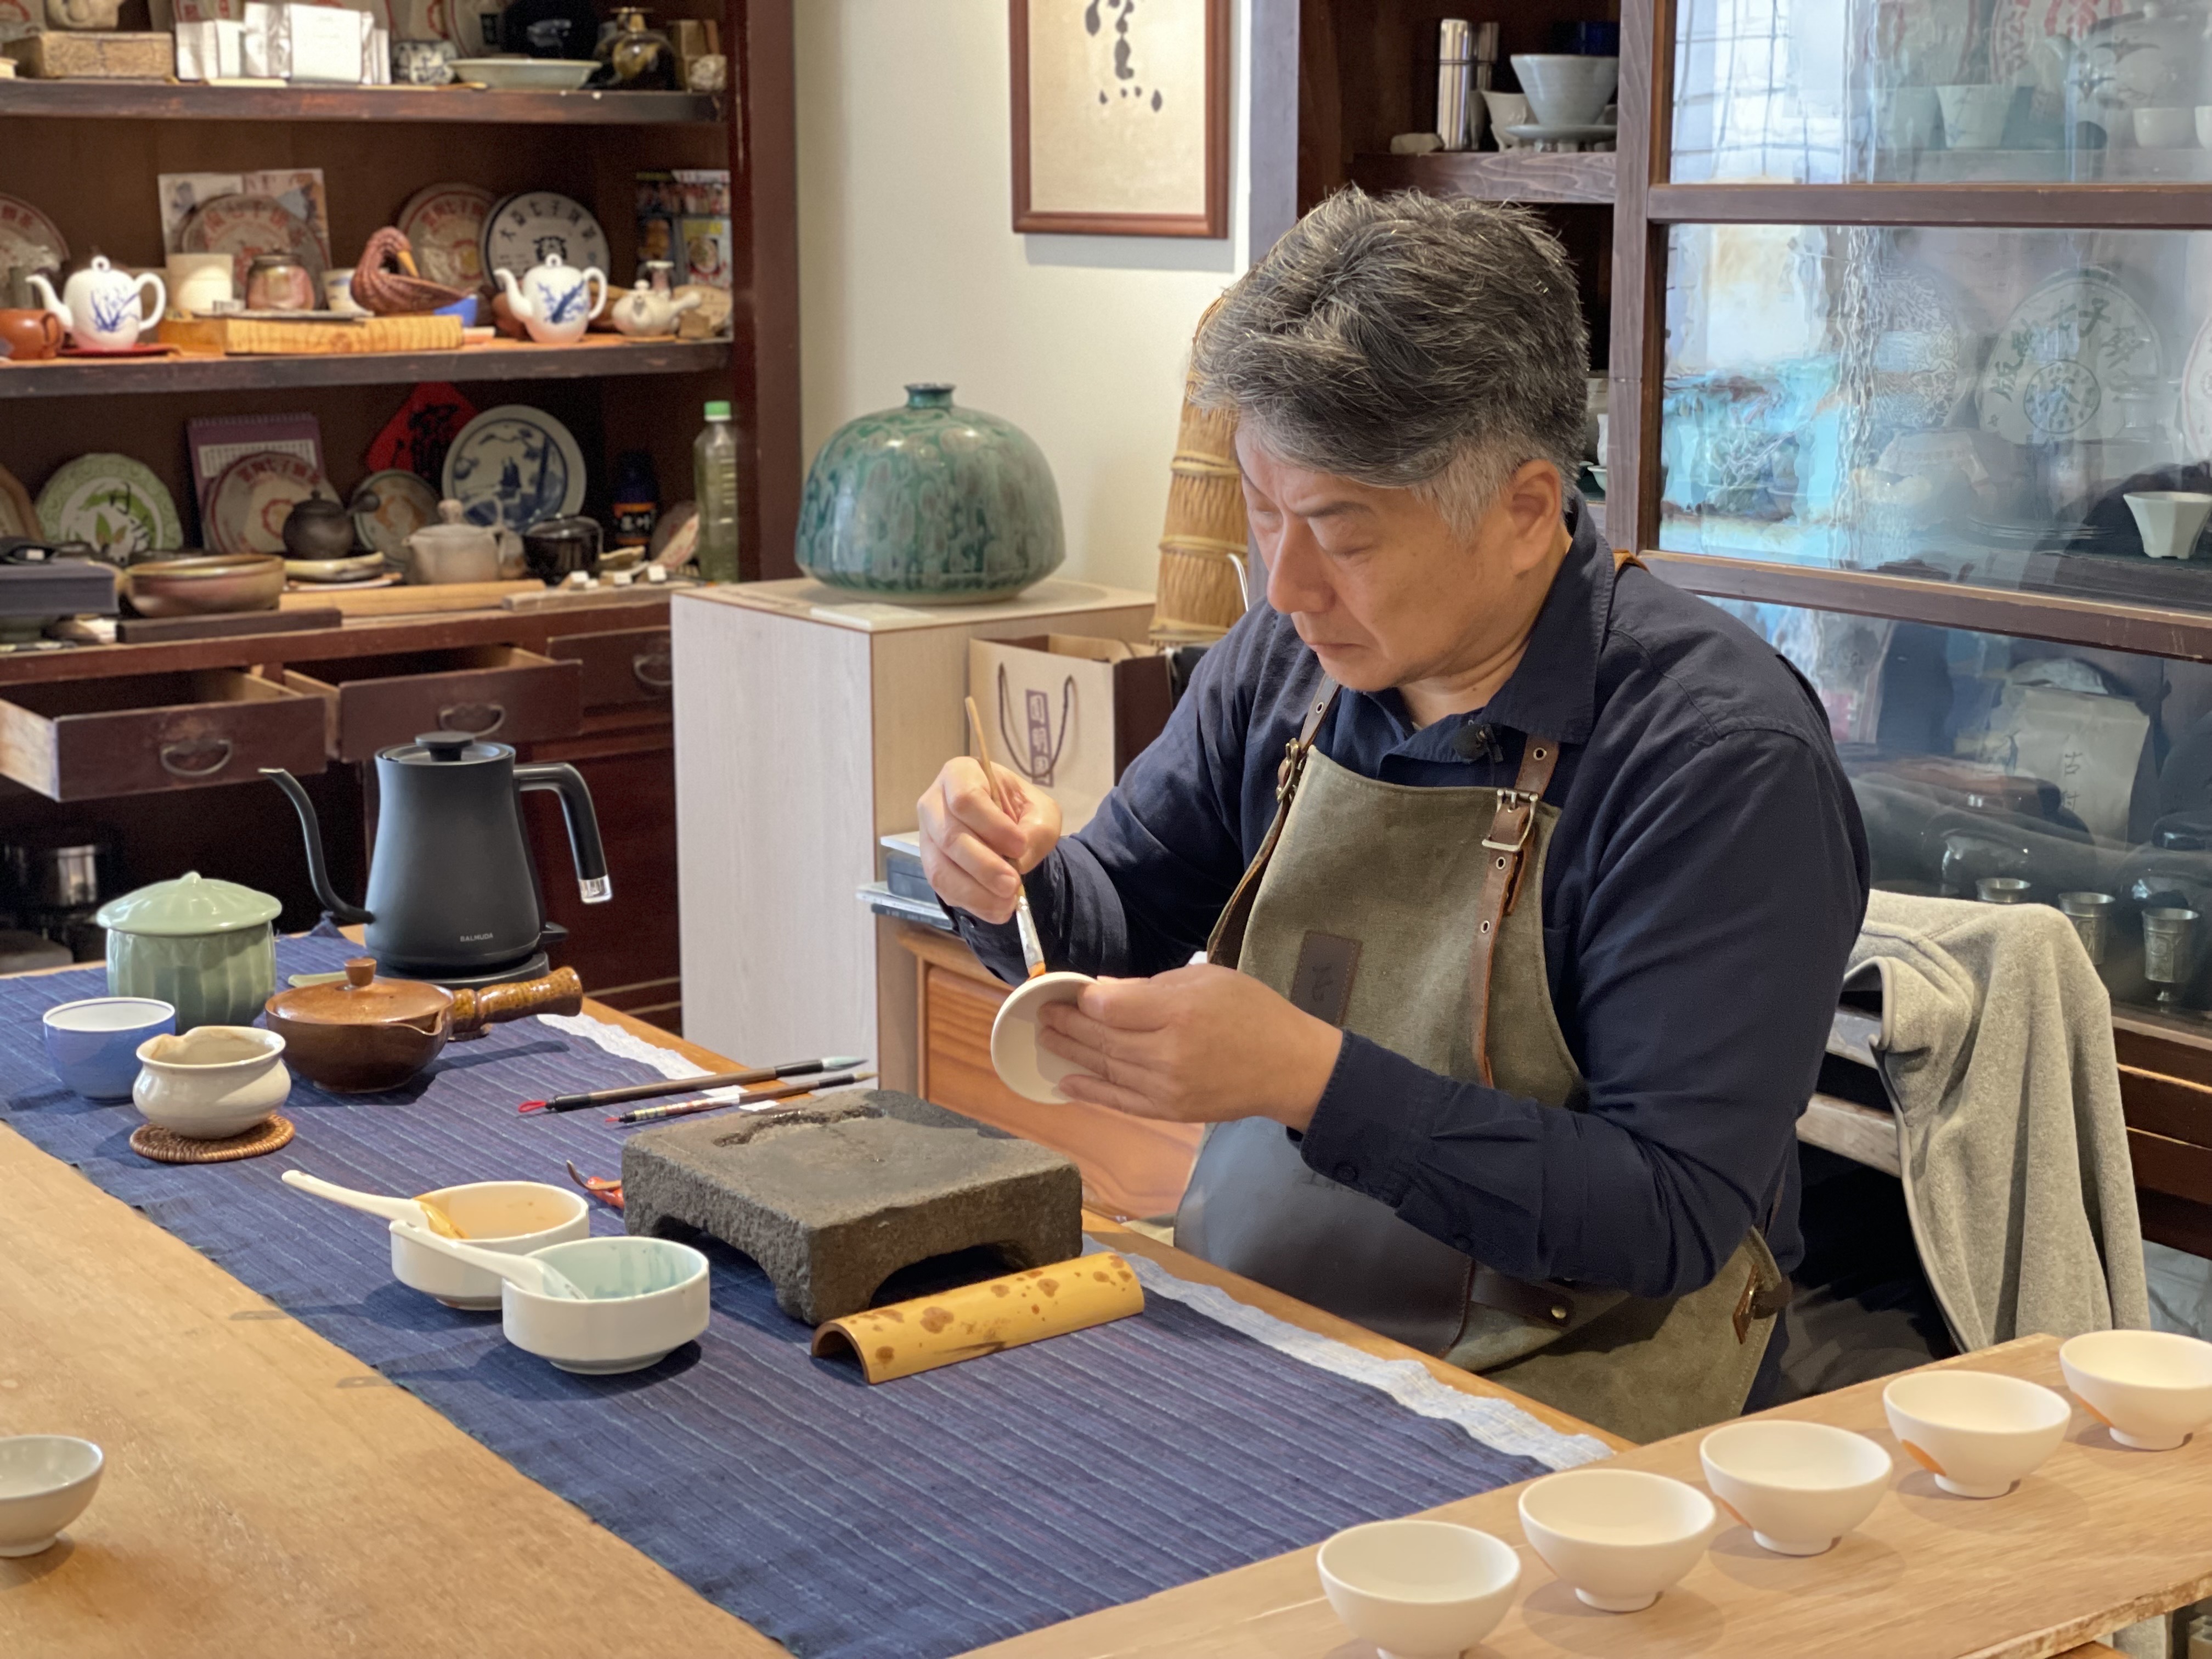 「陶藝經典影展」分別記錄6位陶藝大師們的生平故事及創作歷程，圖為擅於傳統「古早碗」製作技術的陶藝師蘇正立。